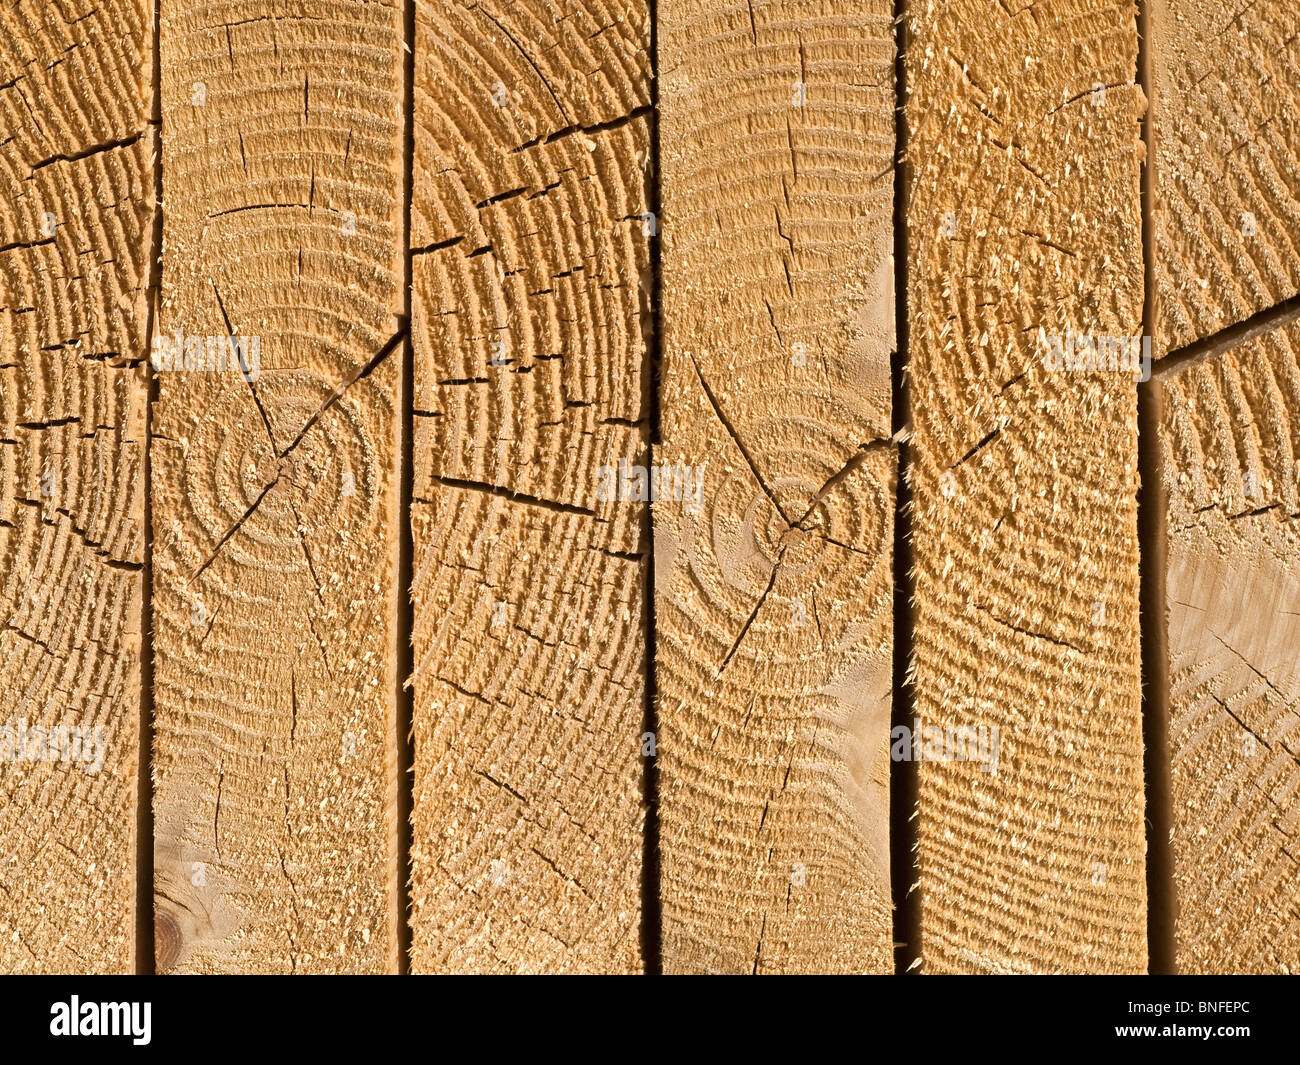 Les planches en bois et de clous pour la construction de logements nouveaux - Indre-et-Loire, France. Banque D'Images